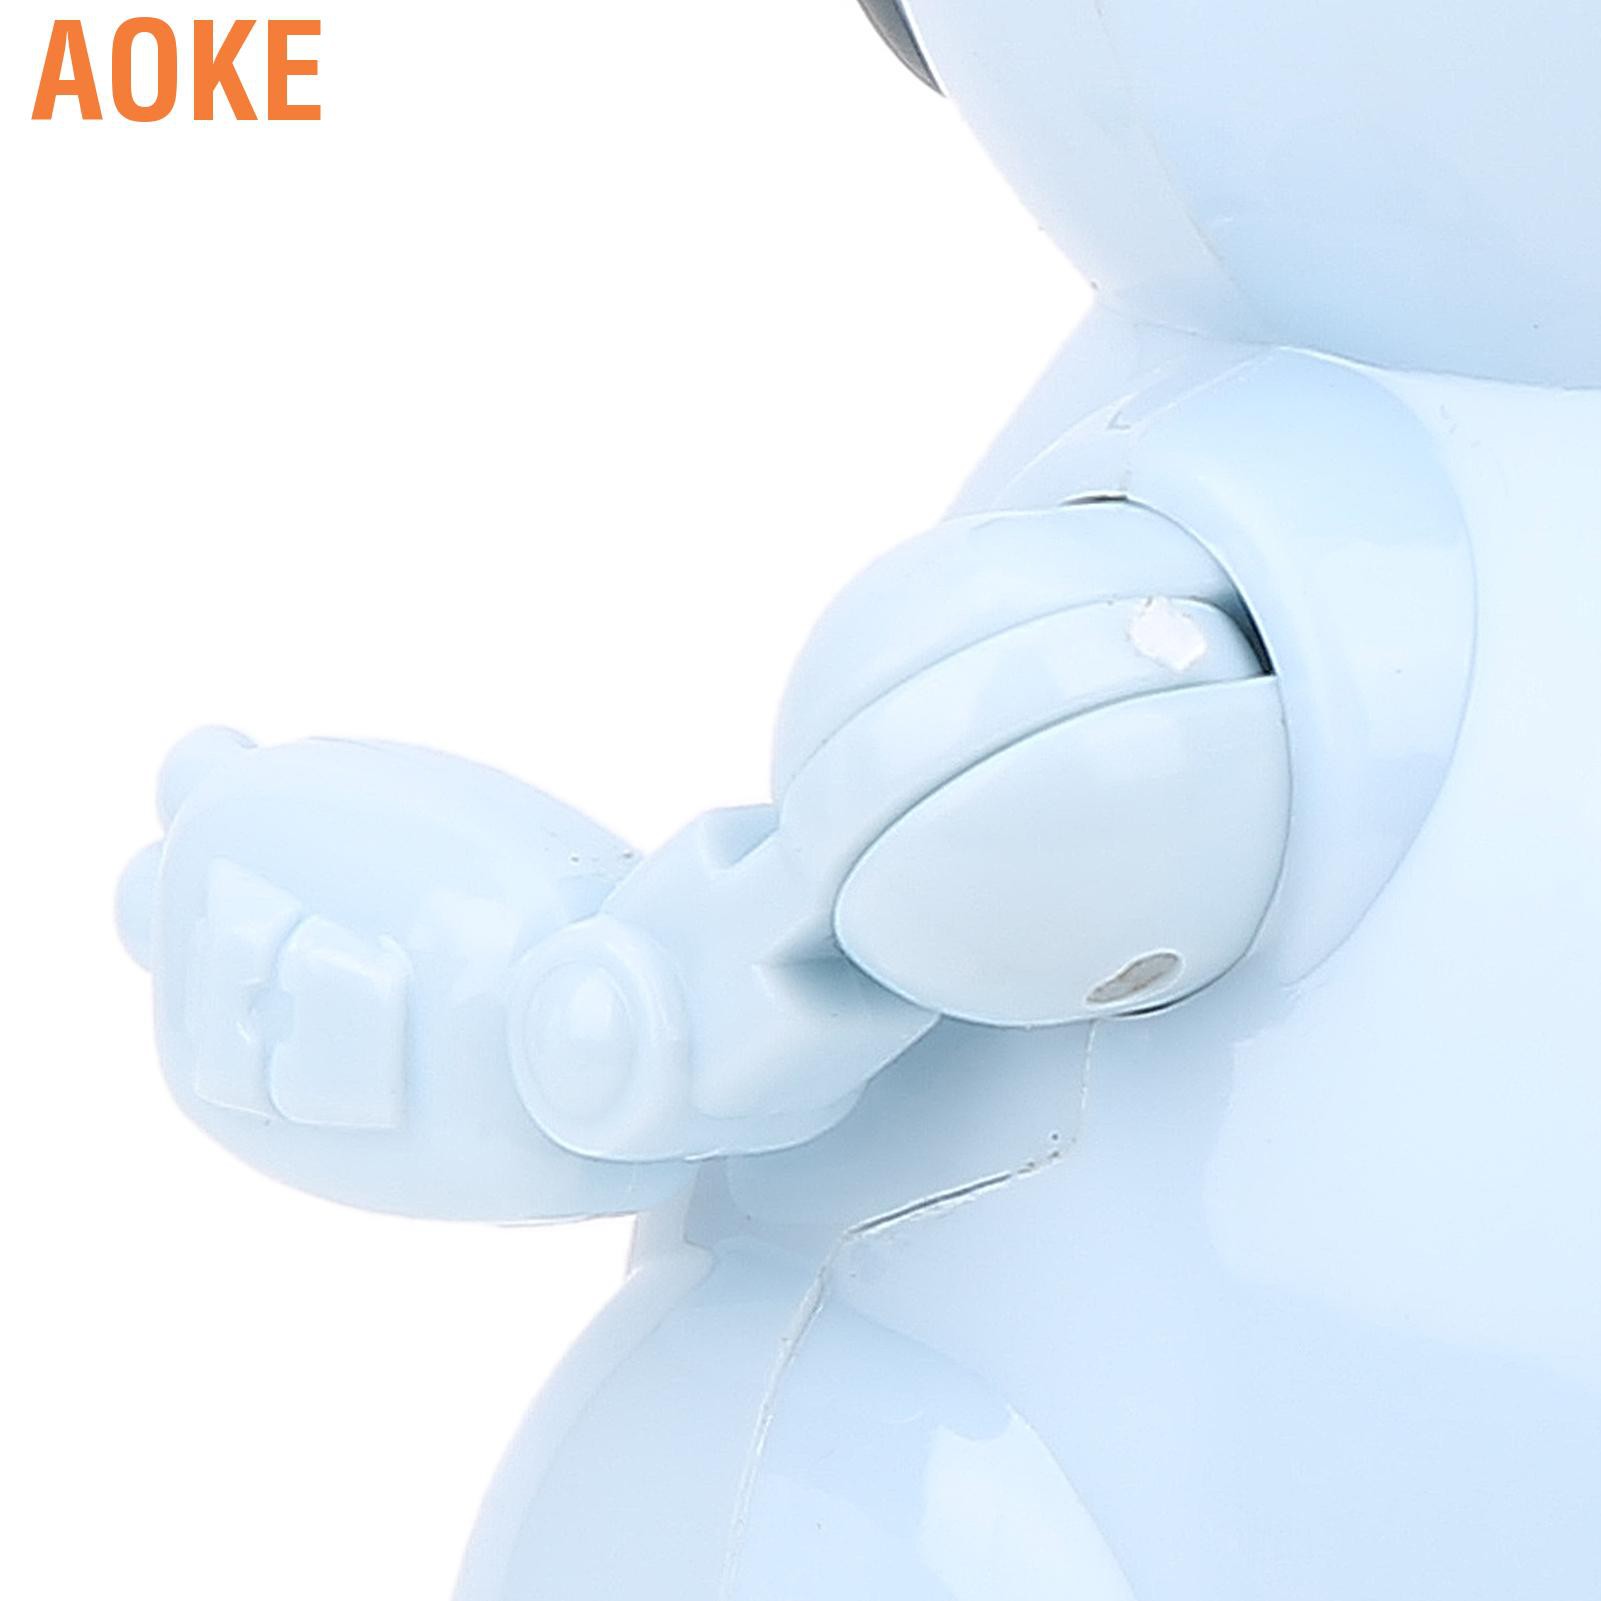 Robot Đồ Chơi Aoke 939a Thu Âm Giọng Nói